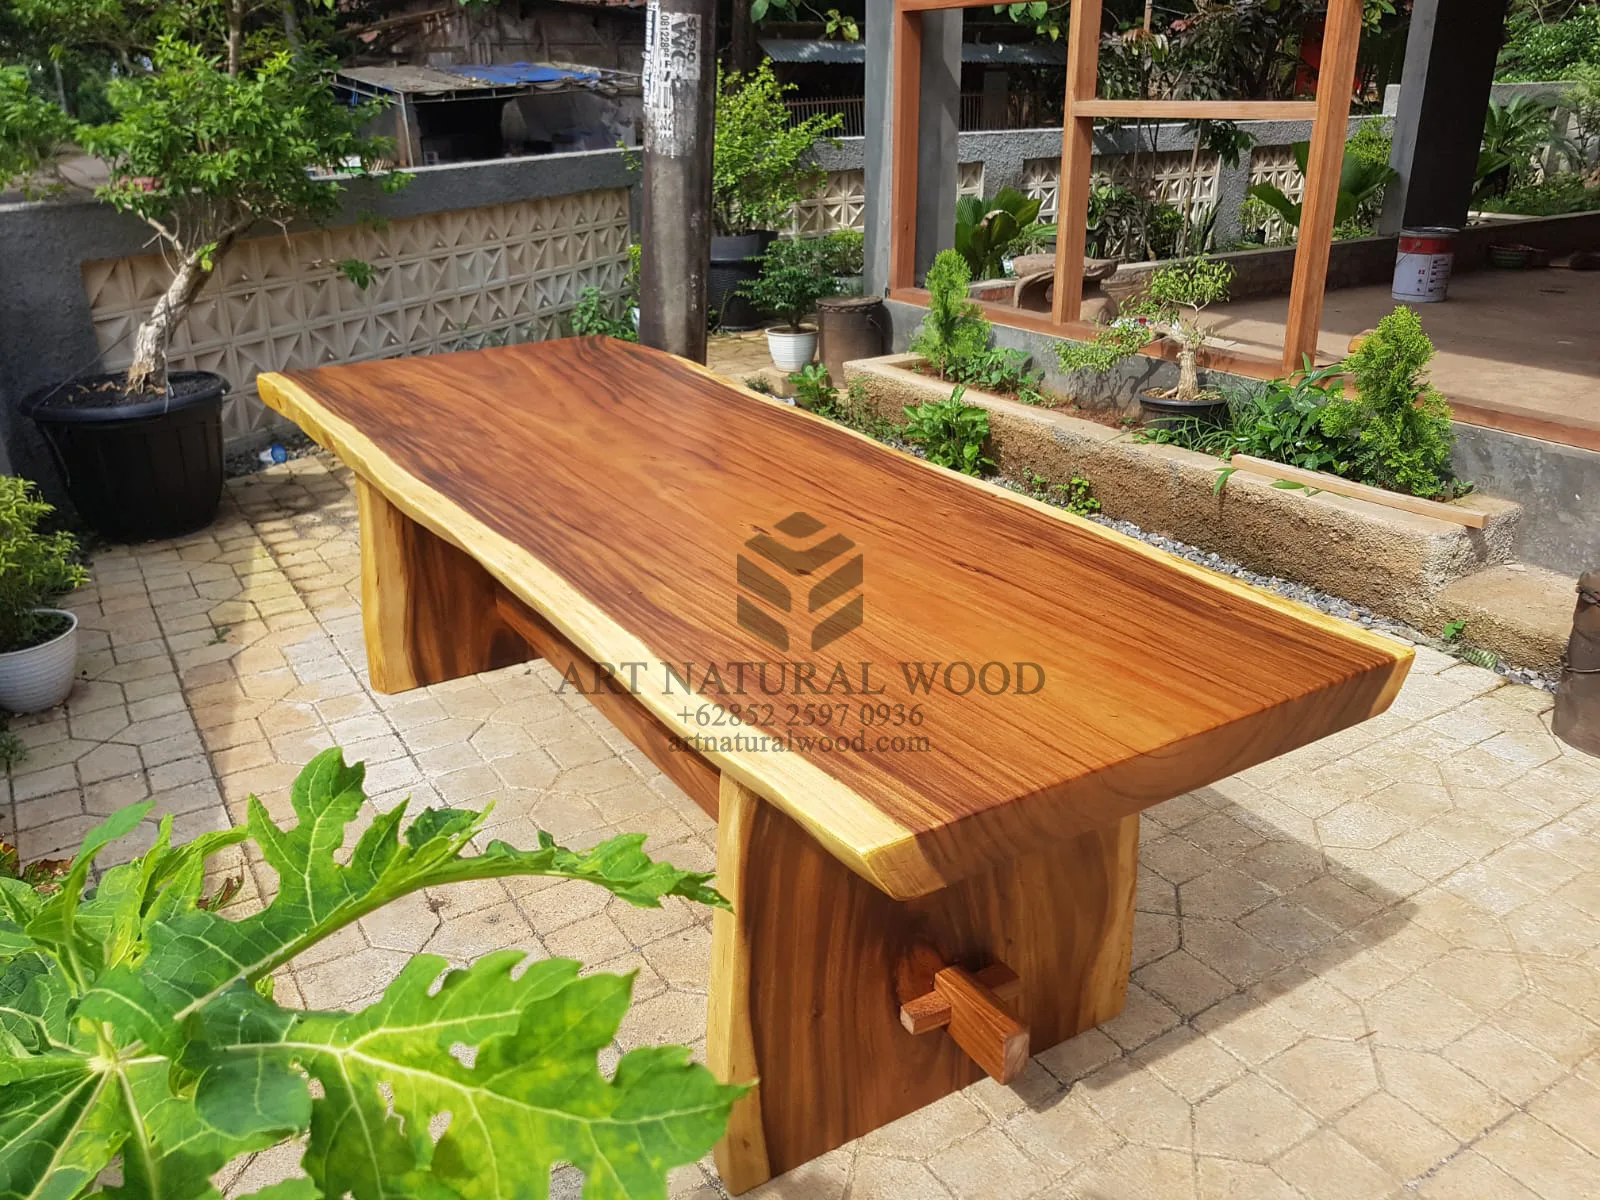 meja makan kayu unik trembesi - art natural wood